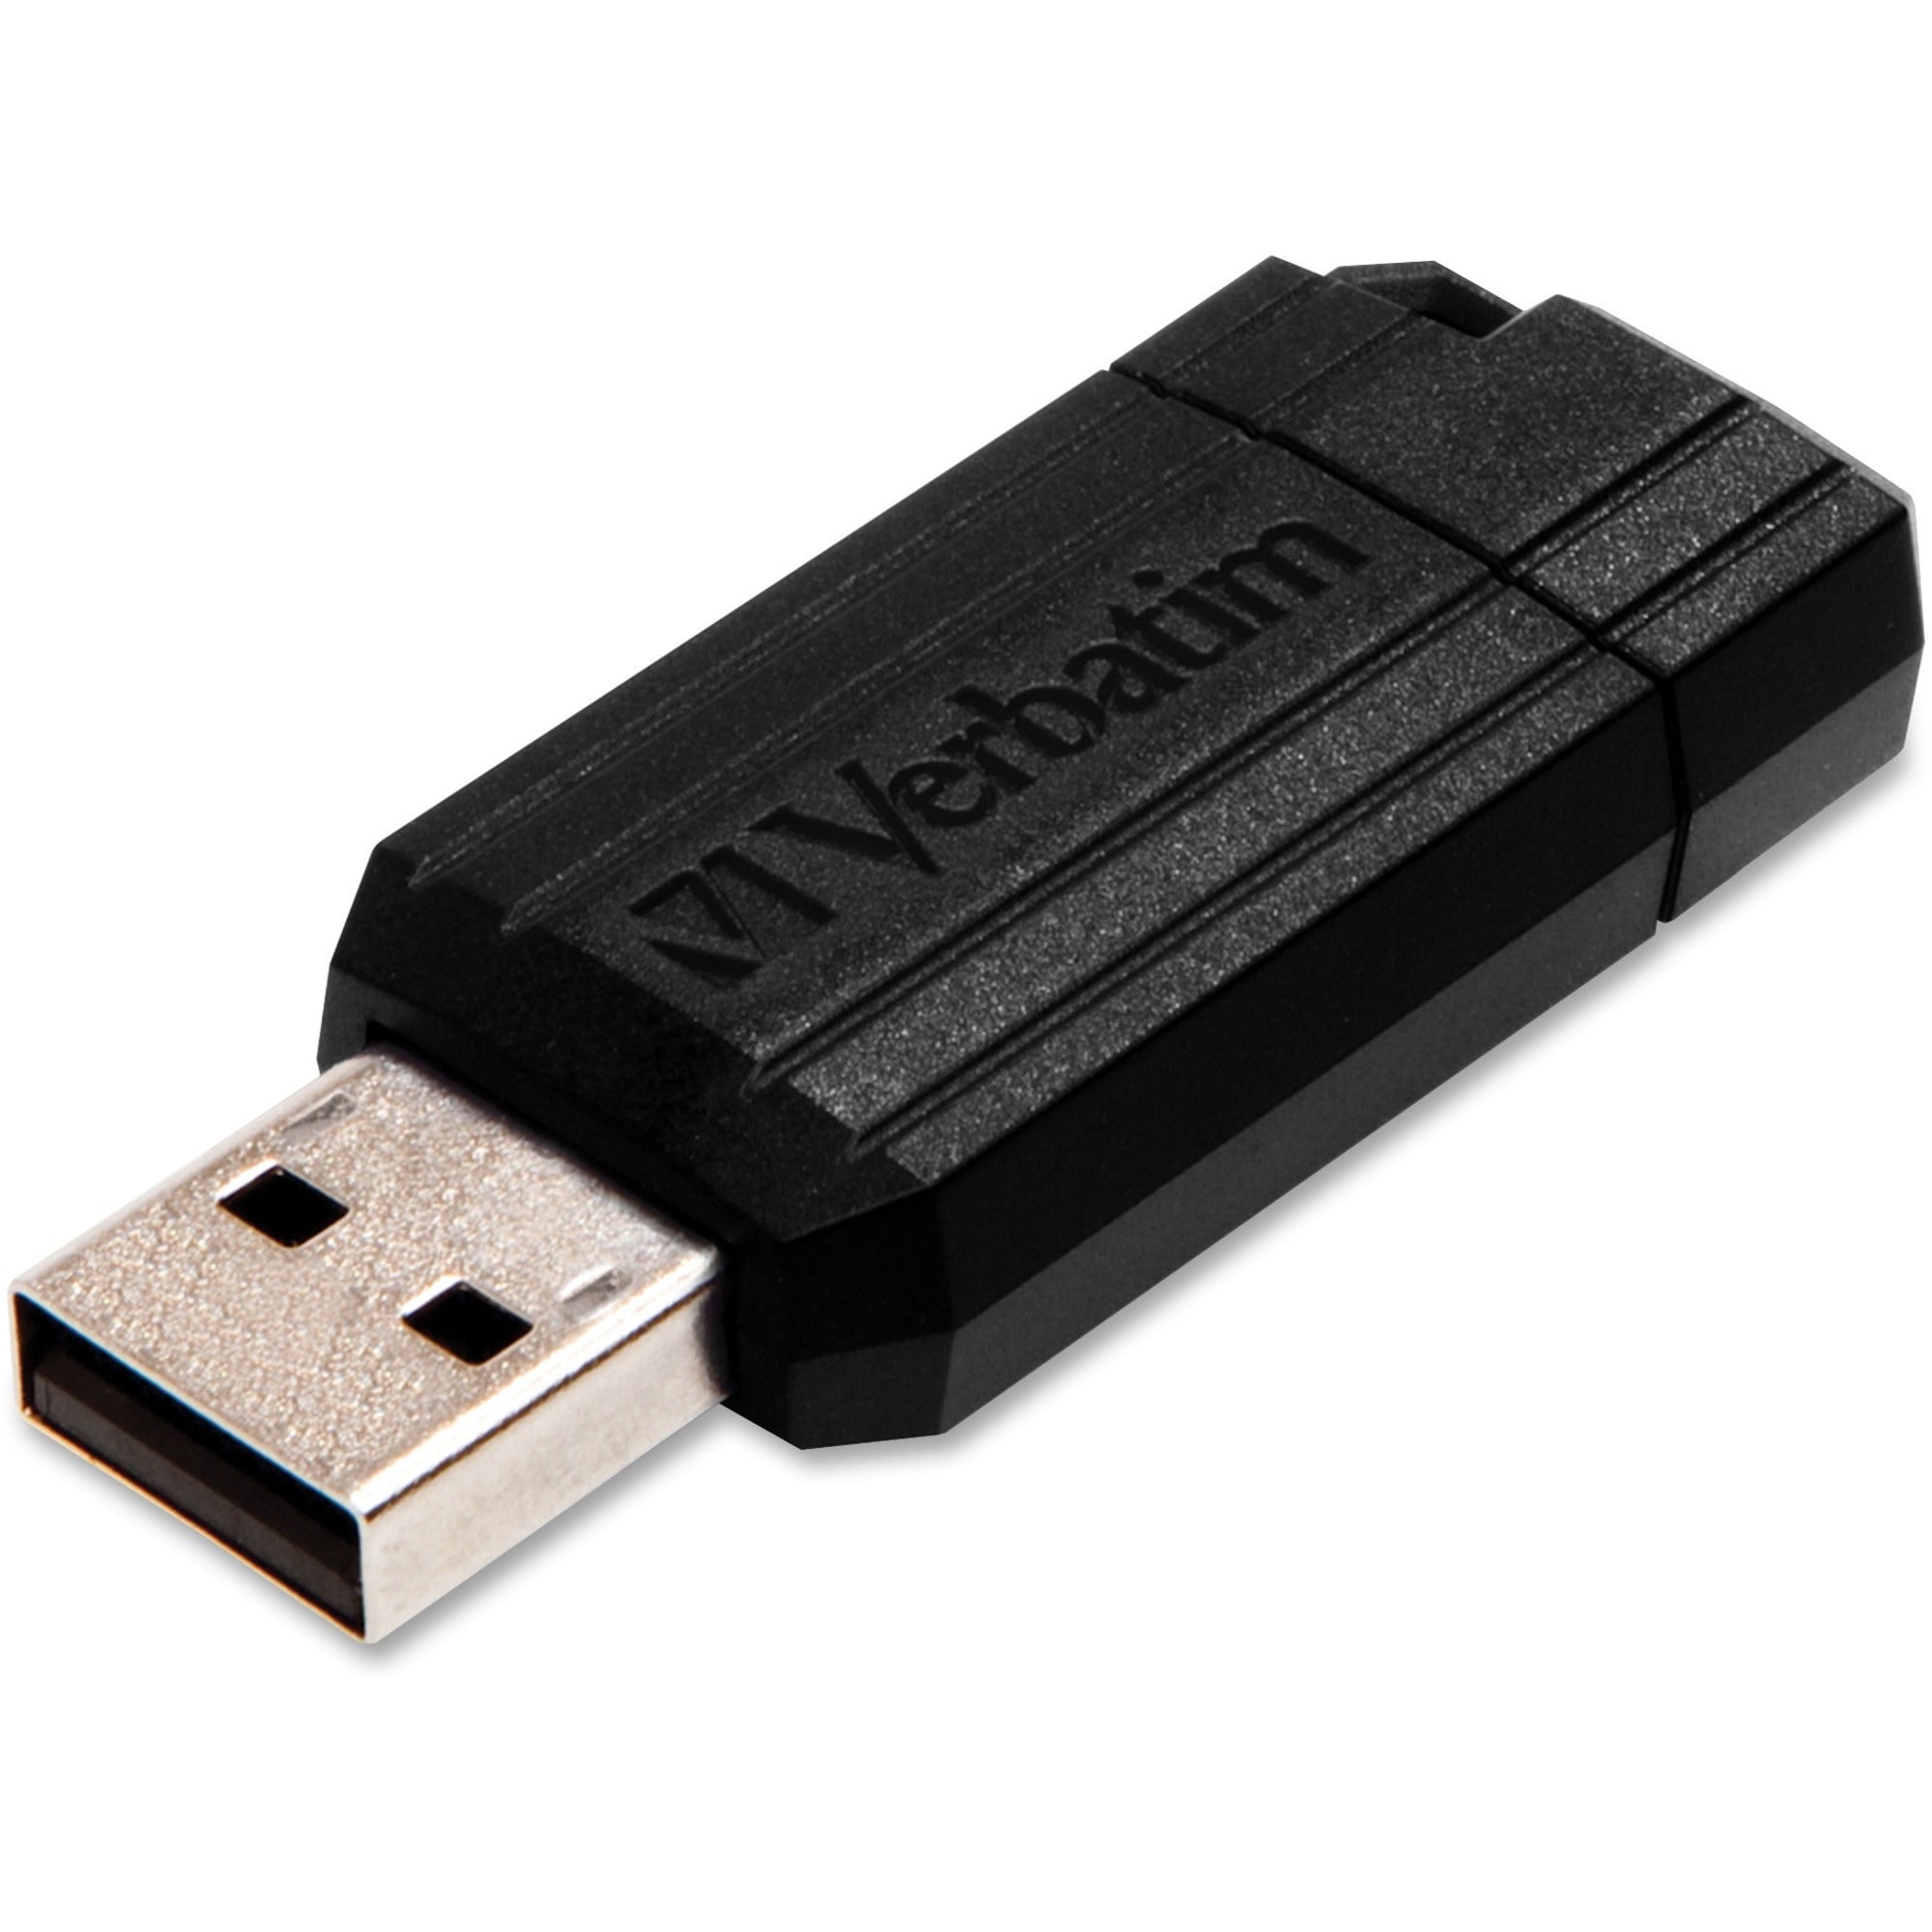 8GB PinStripe USB Flash Drive - Black - 8GB - Black - 